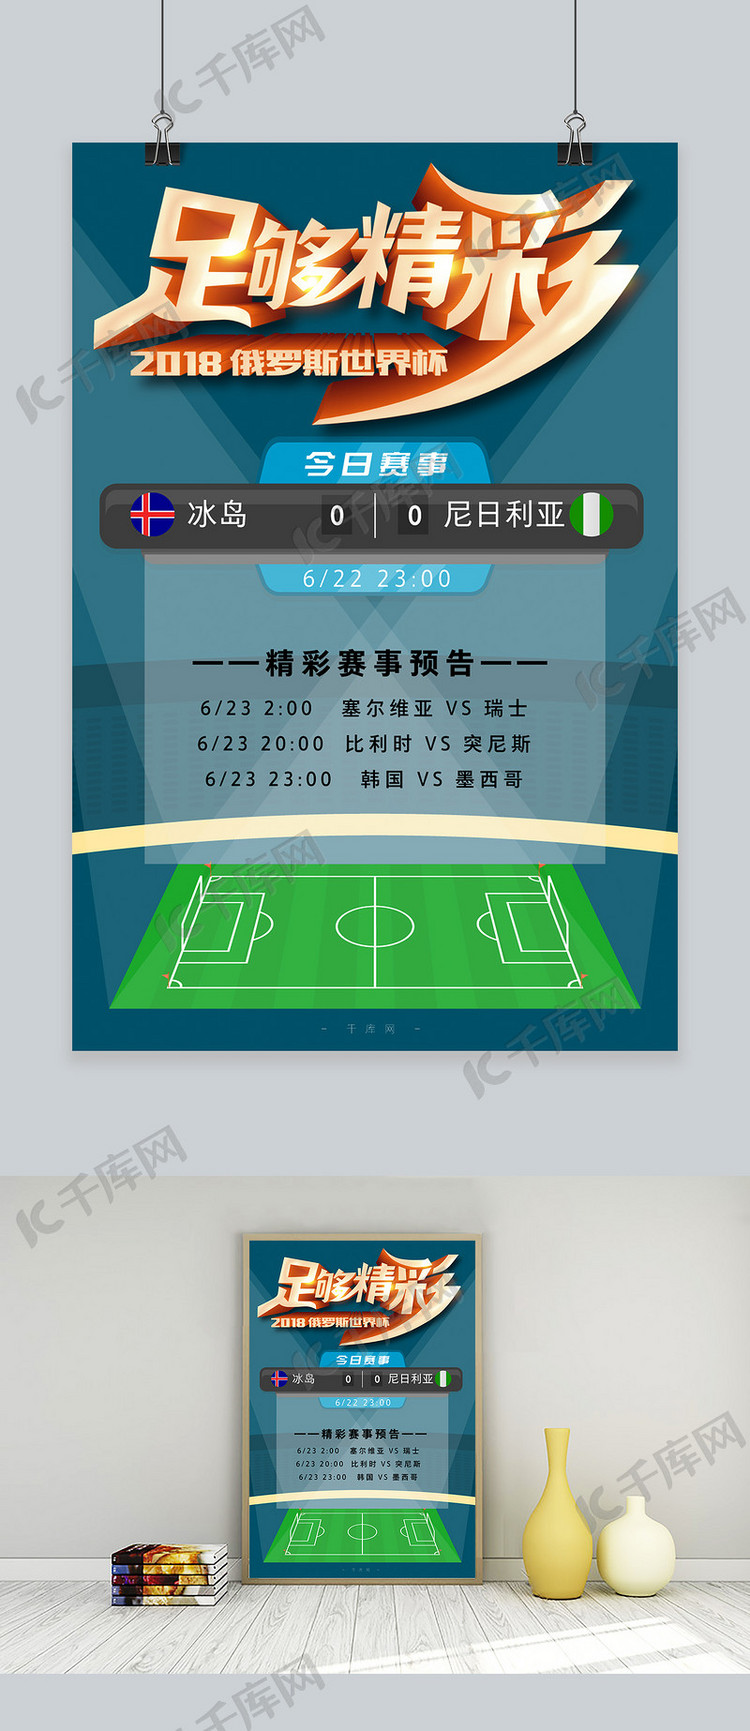 千库原创世界杯足够精彩球场尼日利亚冰岛赛事海报